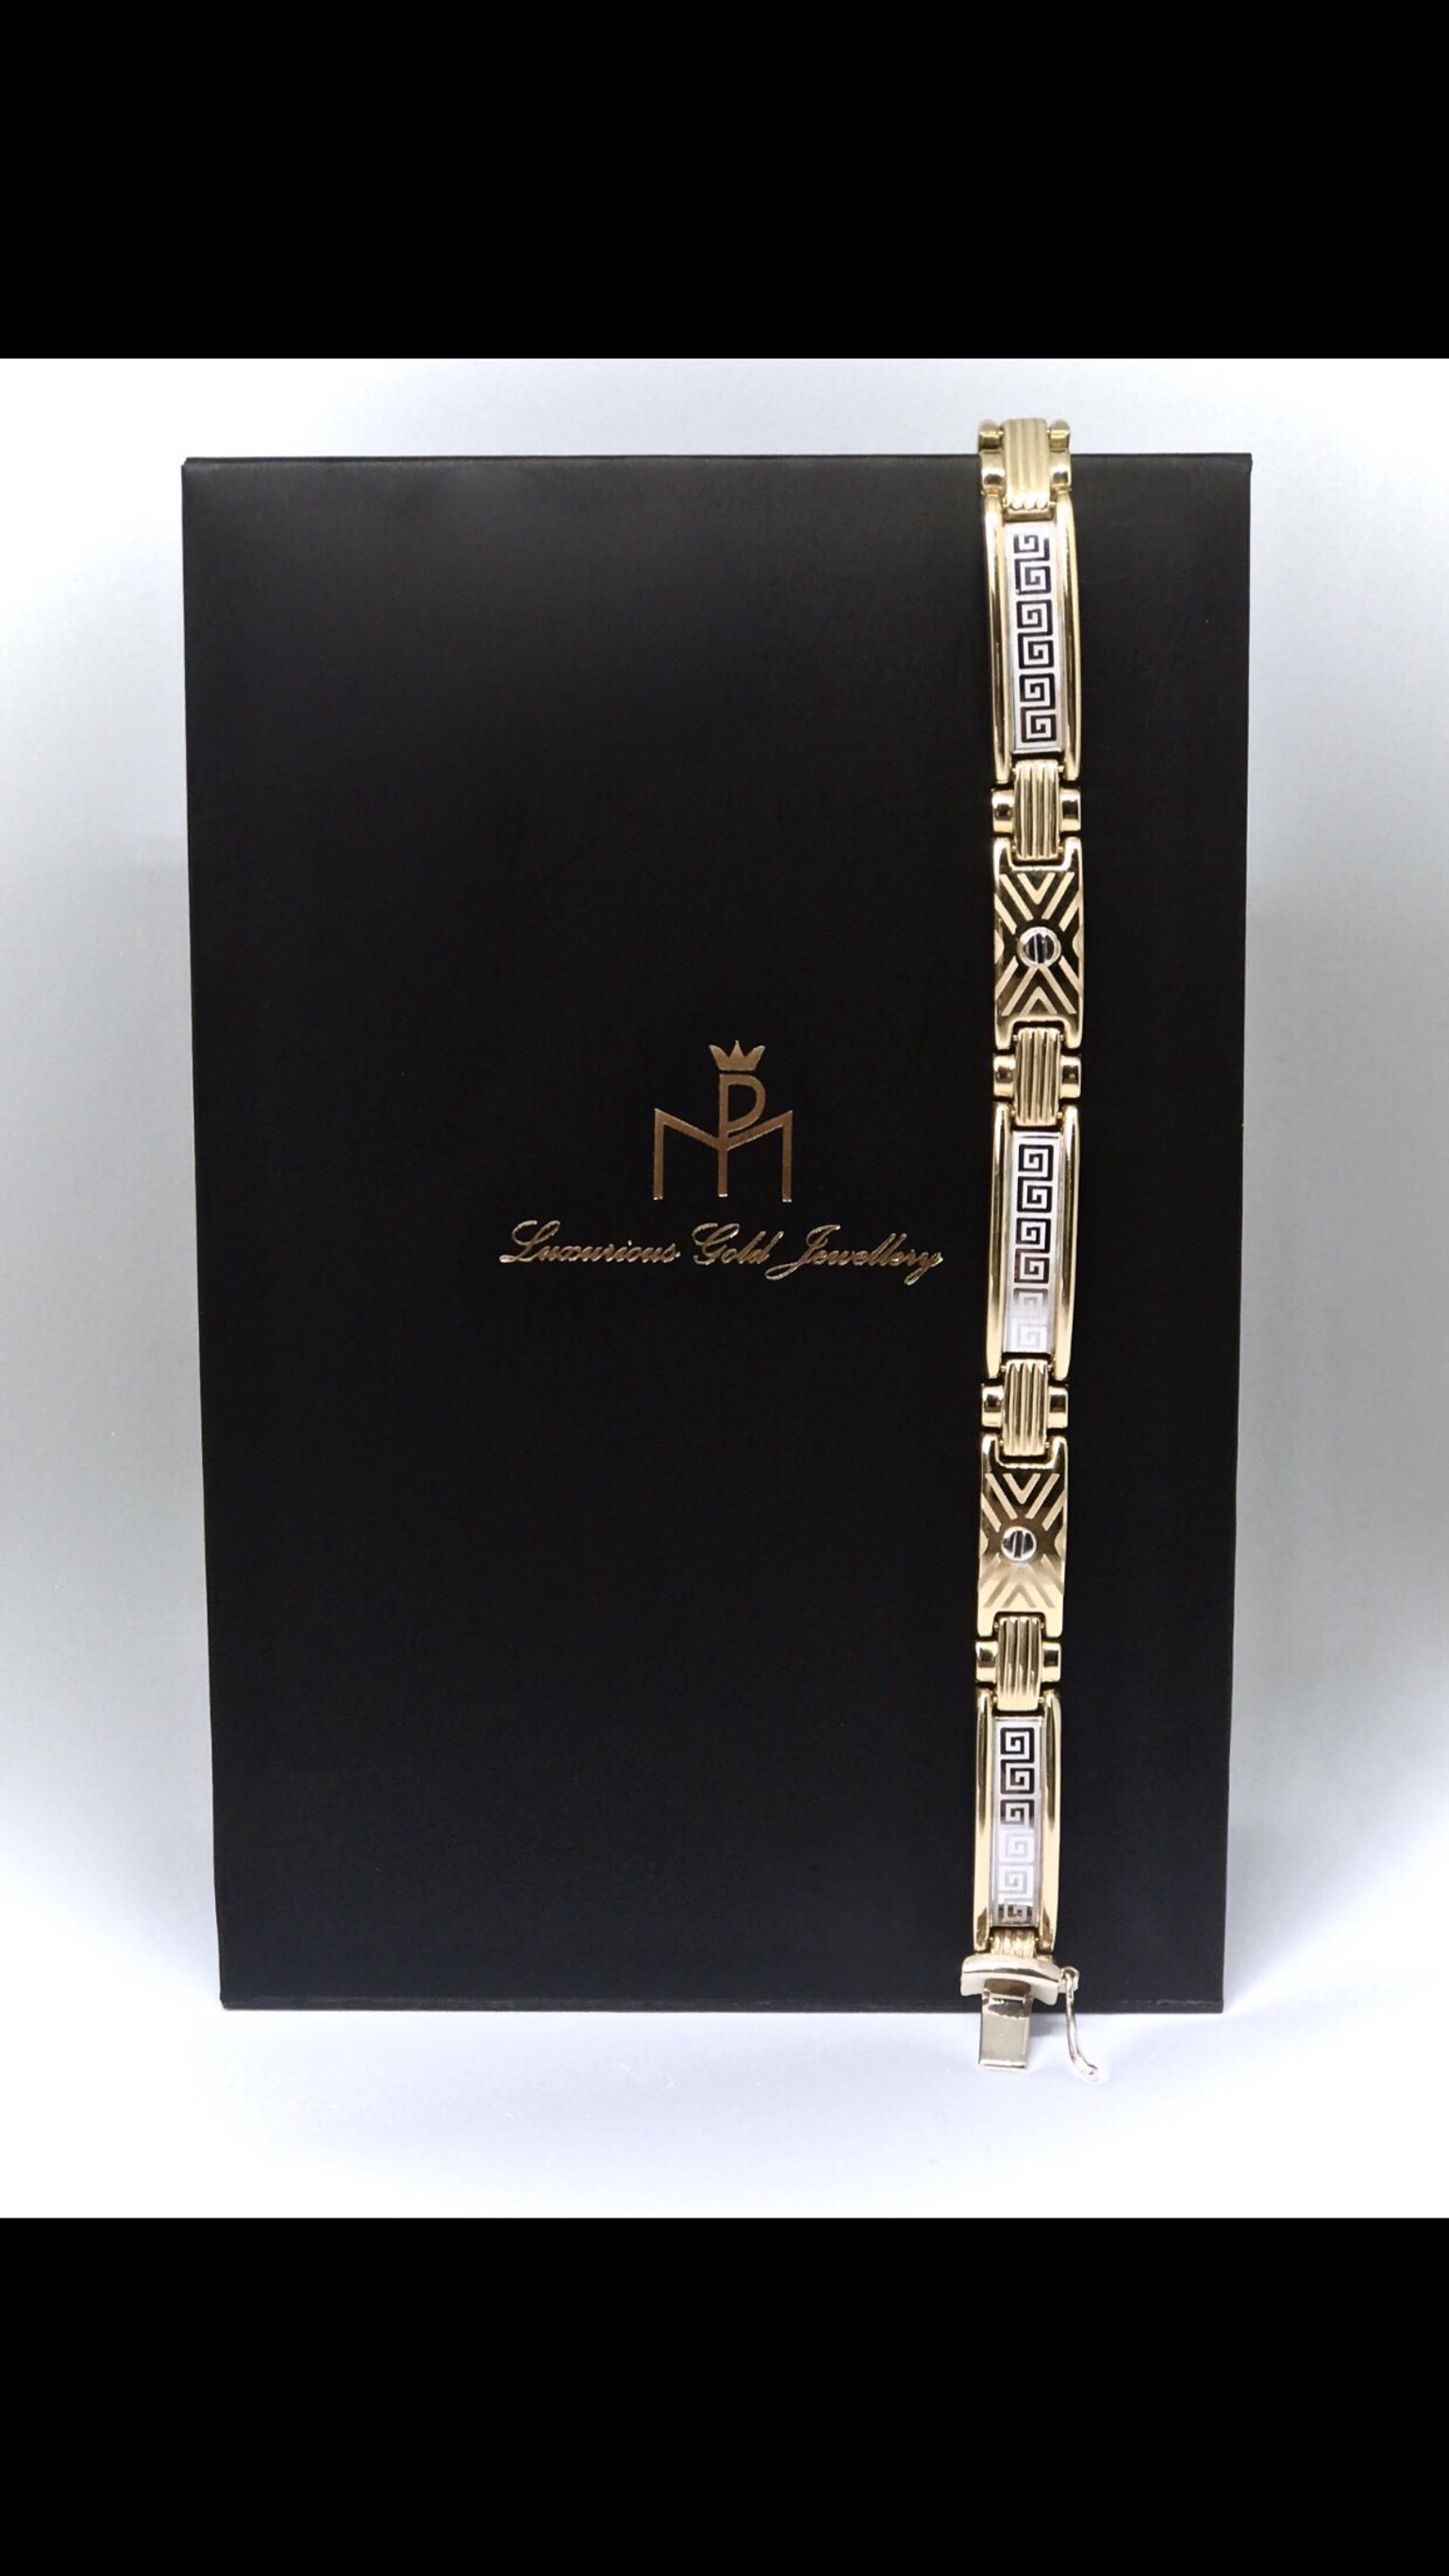 versace 14k gold bracelet